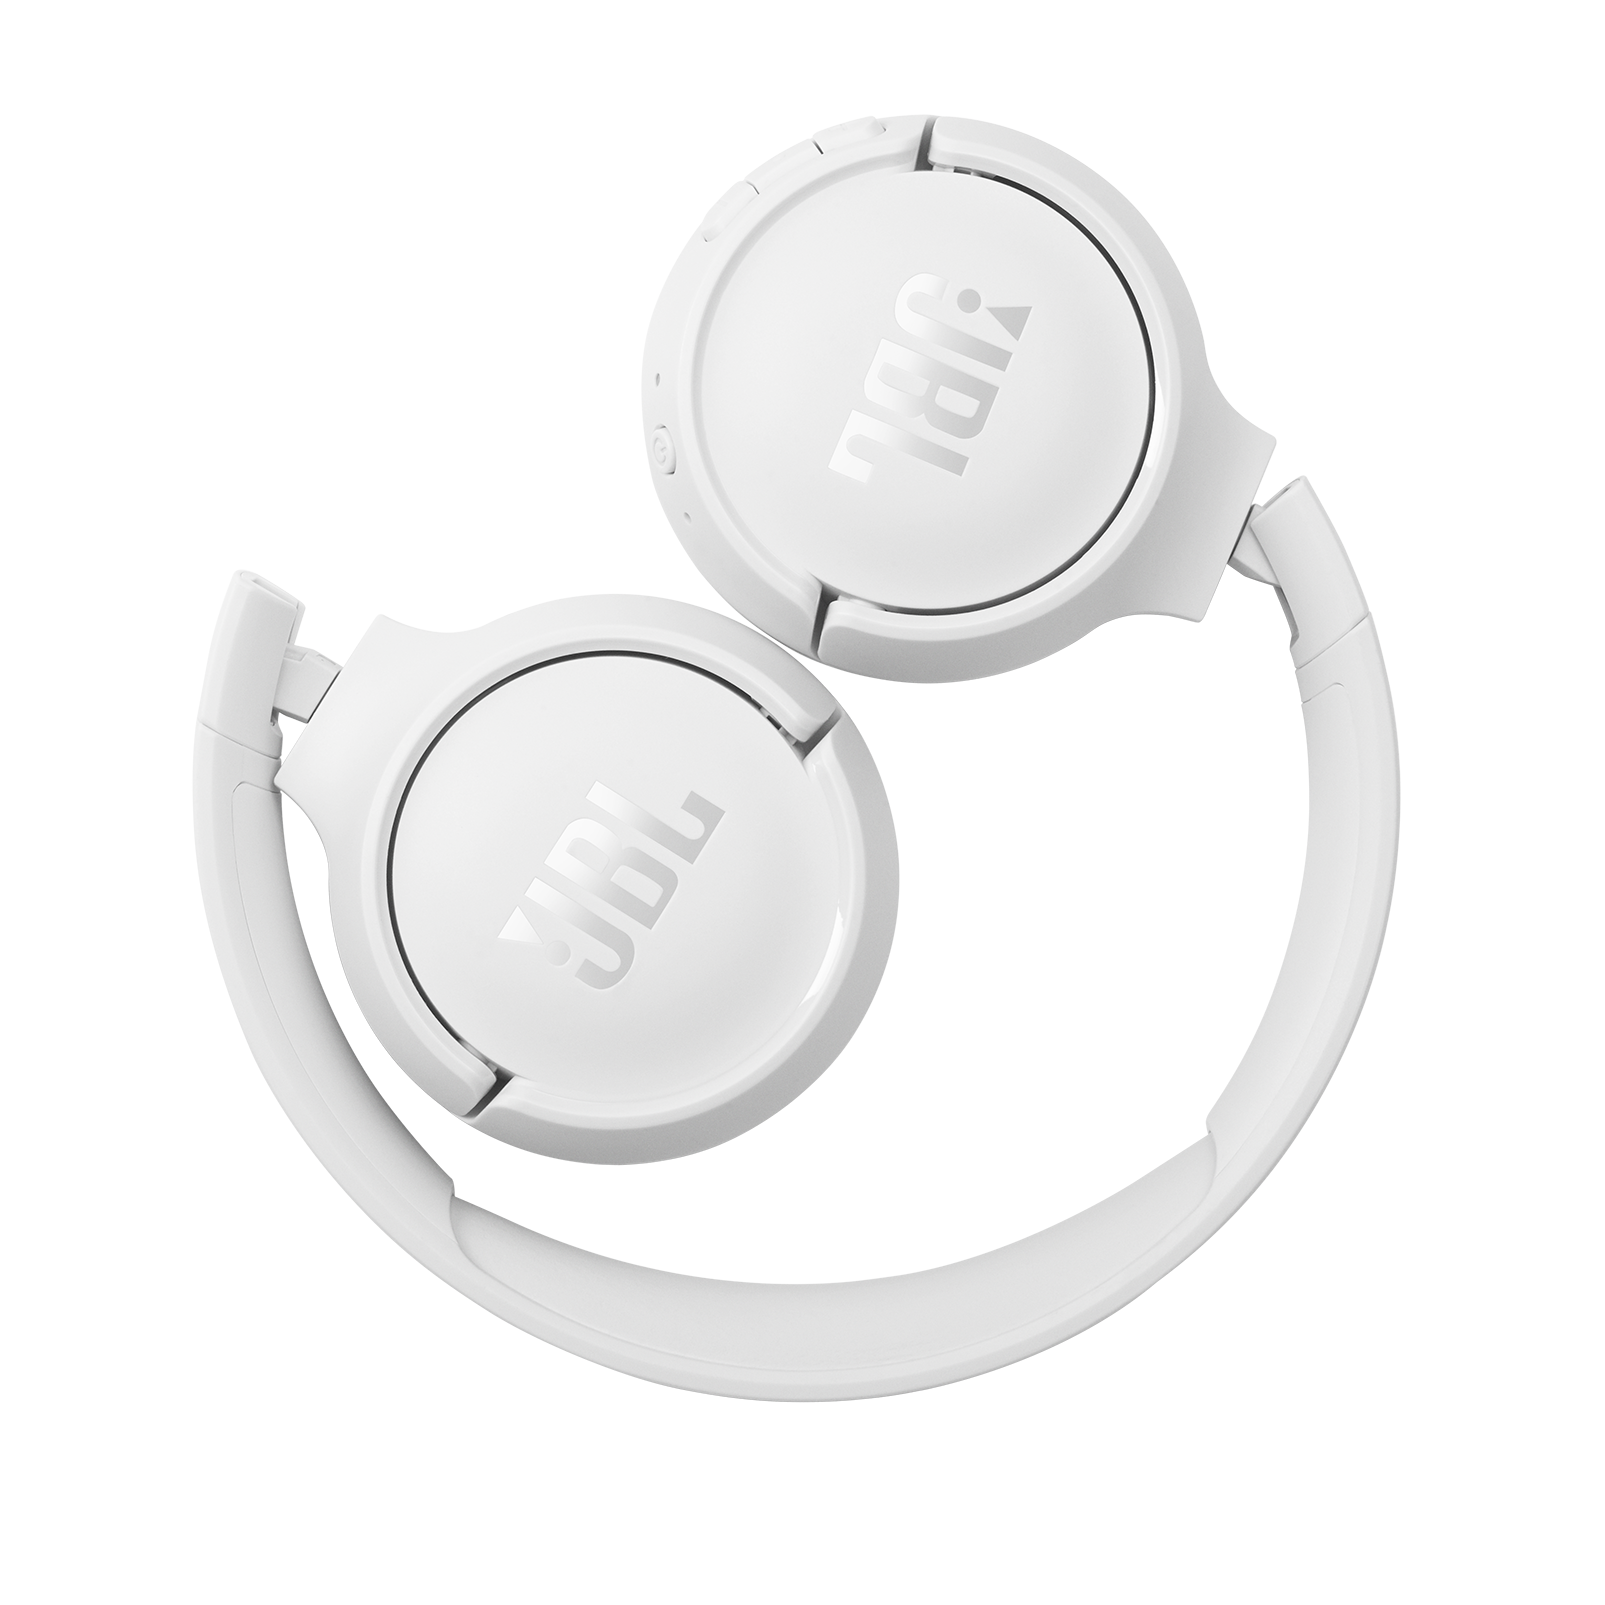 JBL Tune 510BT - White - Wireless on-ear headphones - Detailshot 3